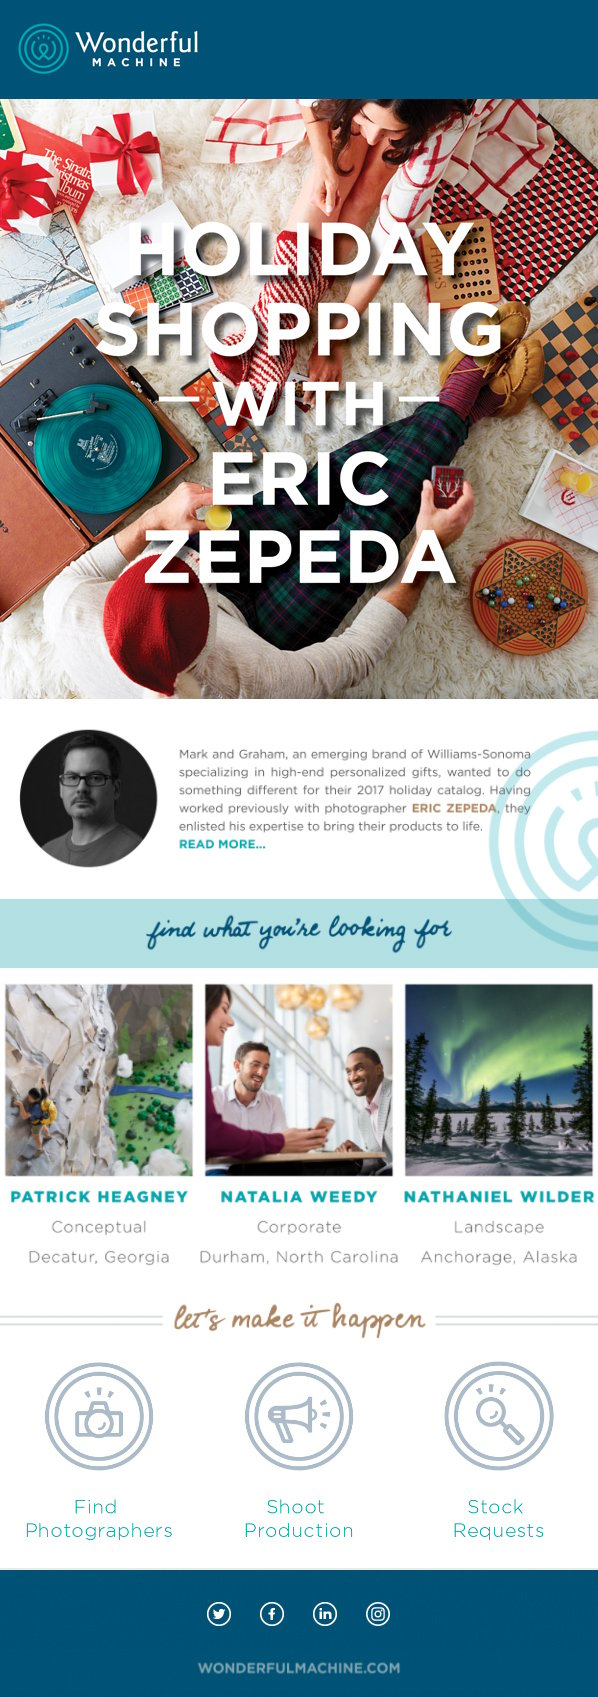 Emailer, Email Marketing, Eric Zepeda, still life photography, Photographer, Photography, Wonderful Machine